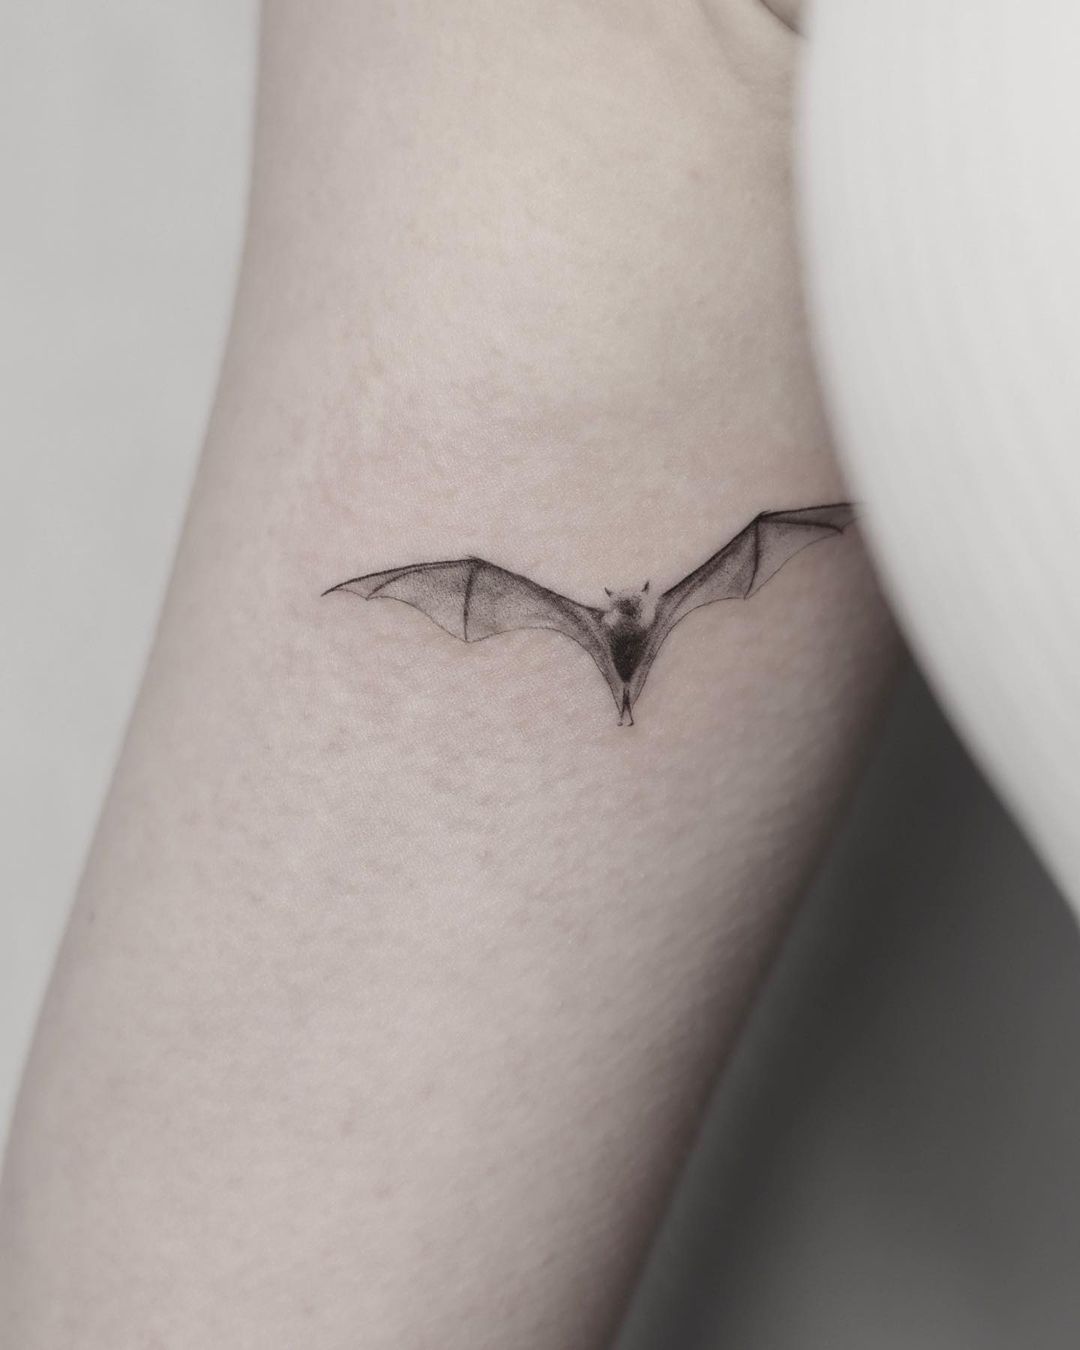 50 Bat Tattoos For Men - YouTube